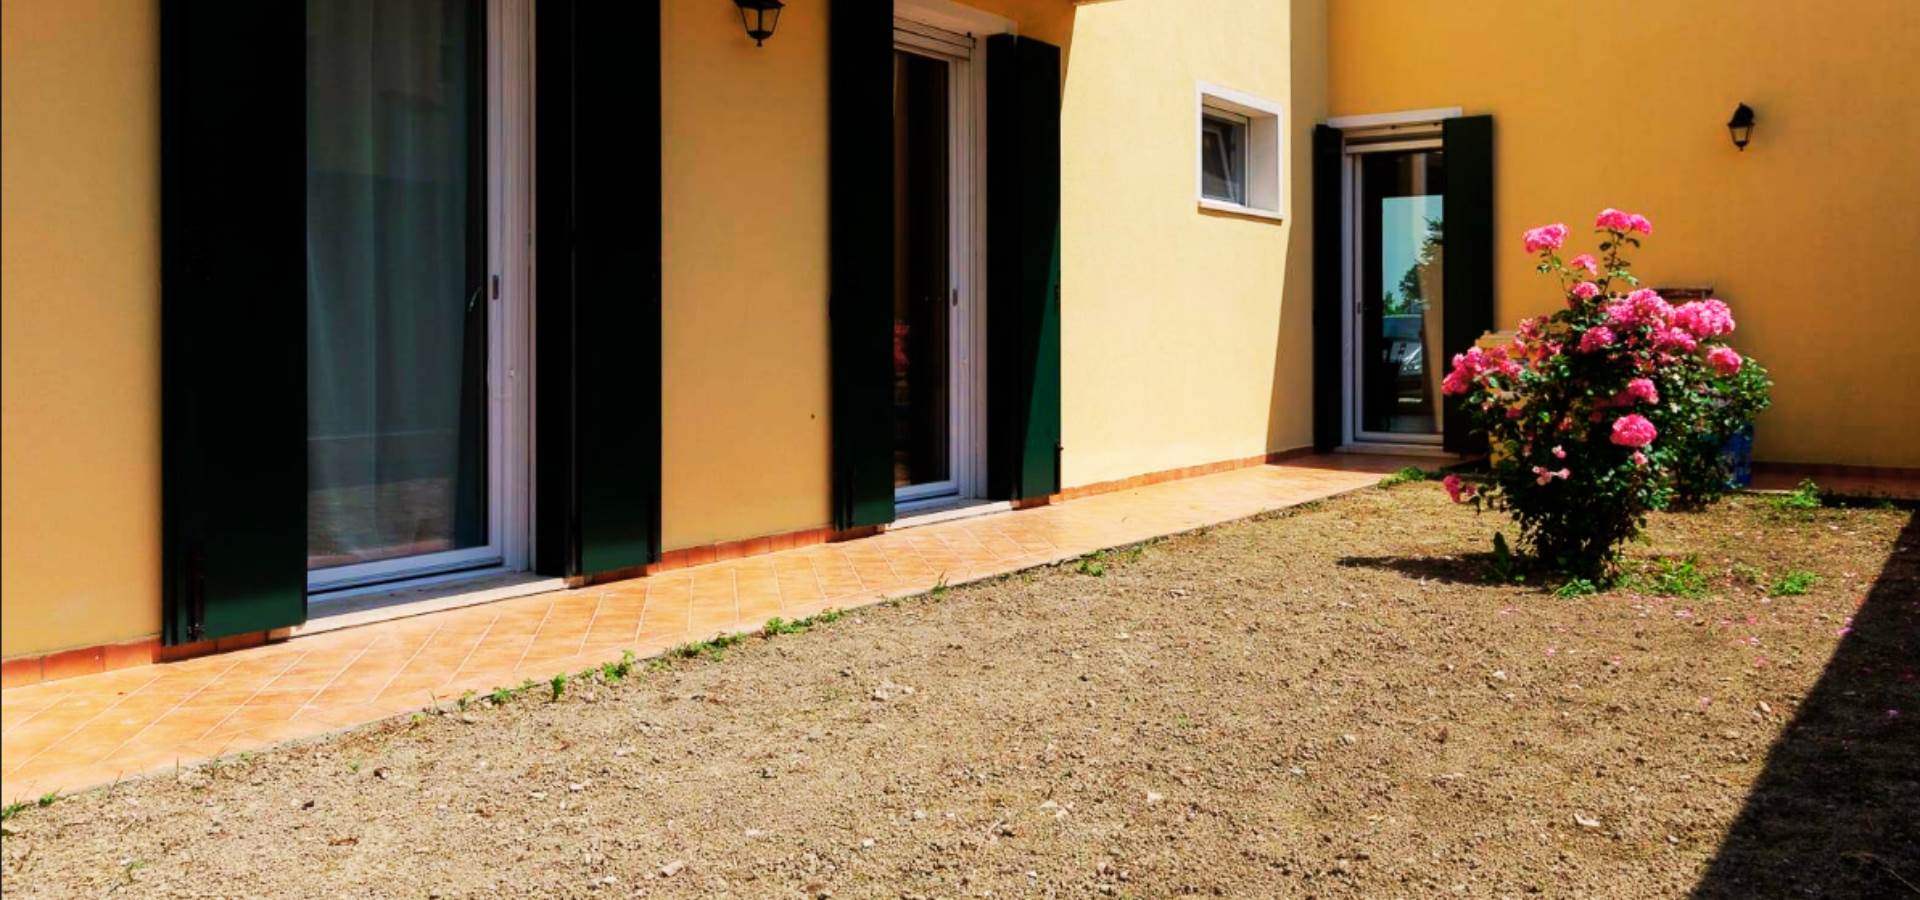 In zona residenziale tranquilla a circa 1 km dal centro di Teglio Veneto, grazioso appartamento al piano terra facente parte di un recente complesso di sole 4 unità senza spese condominiali. 